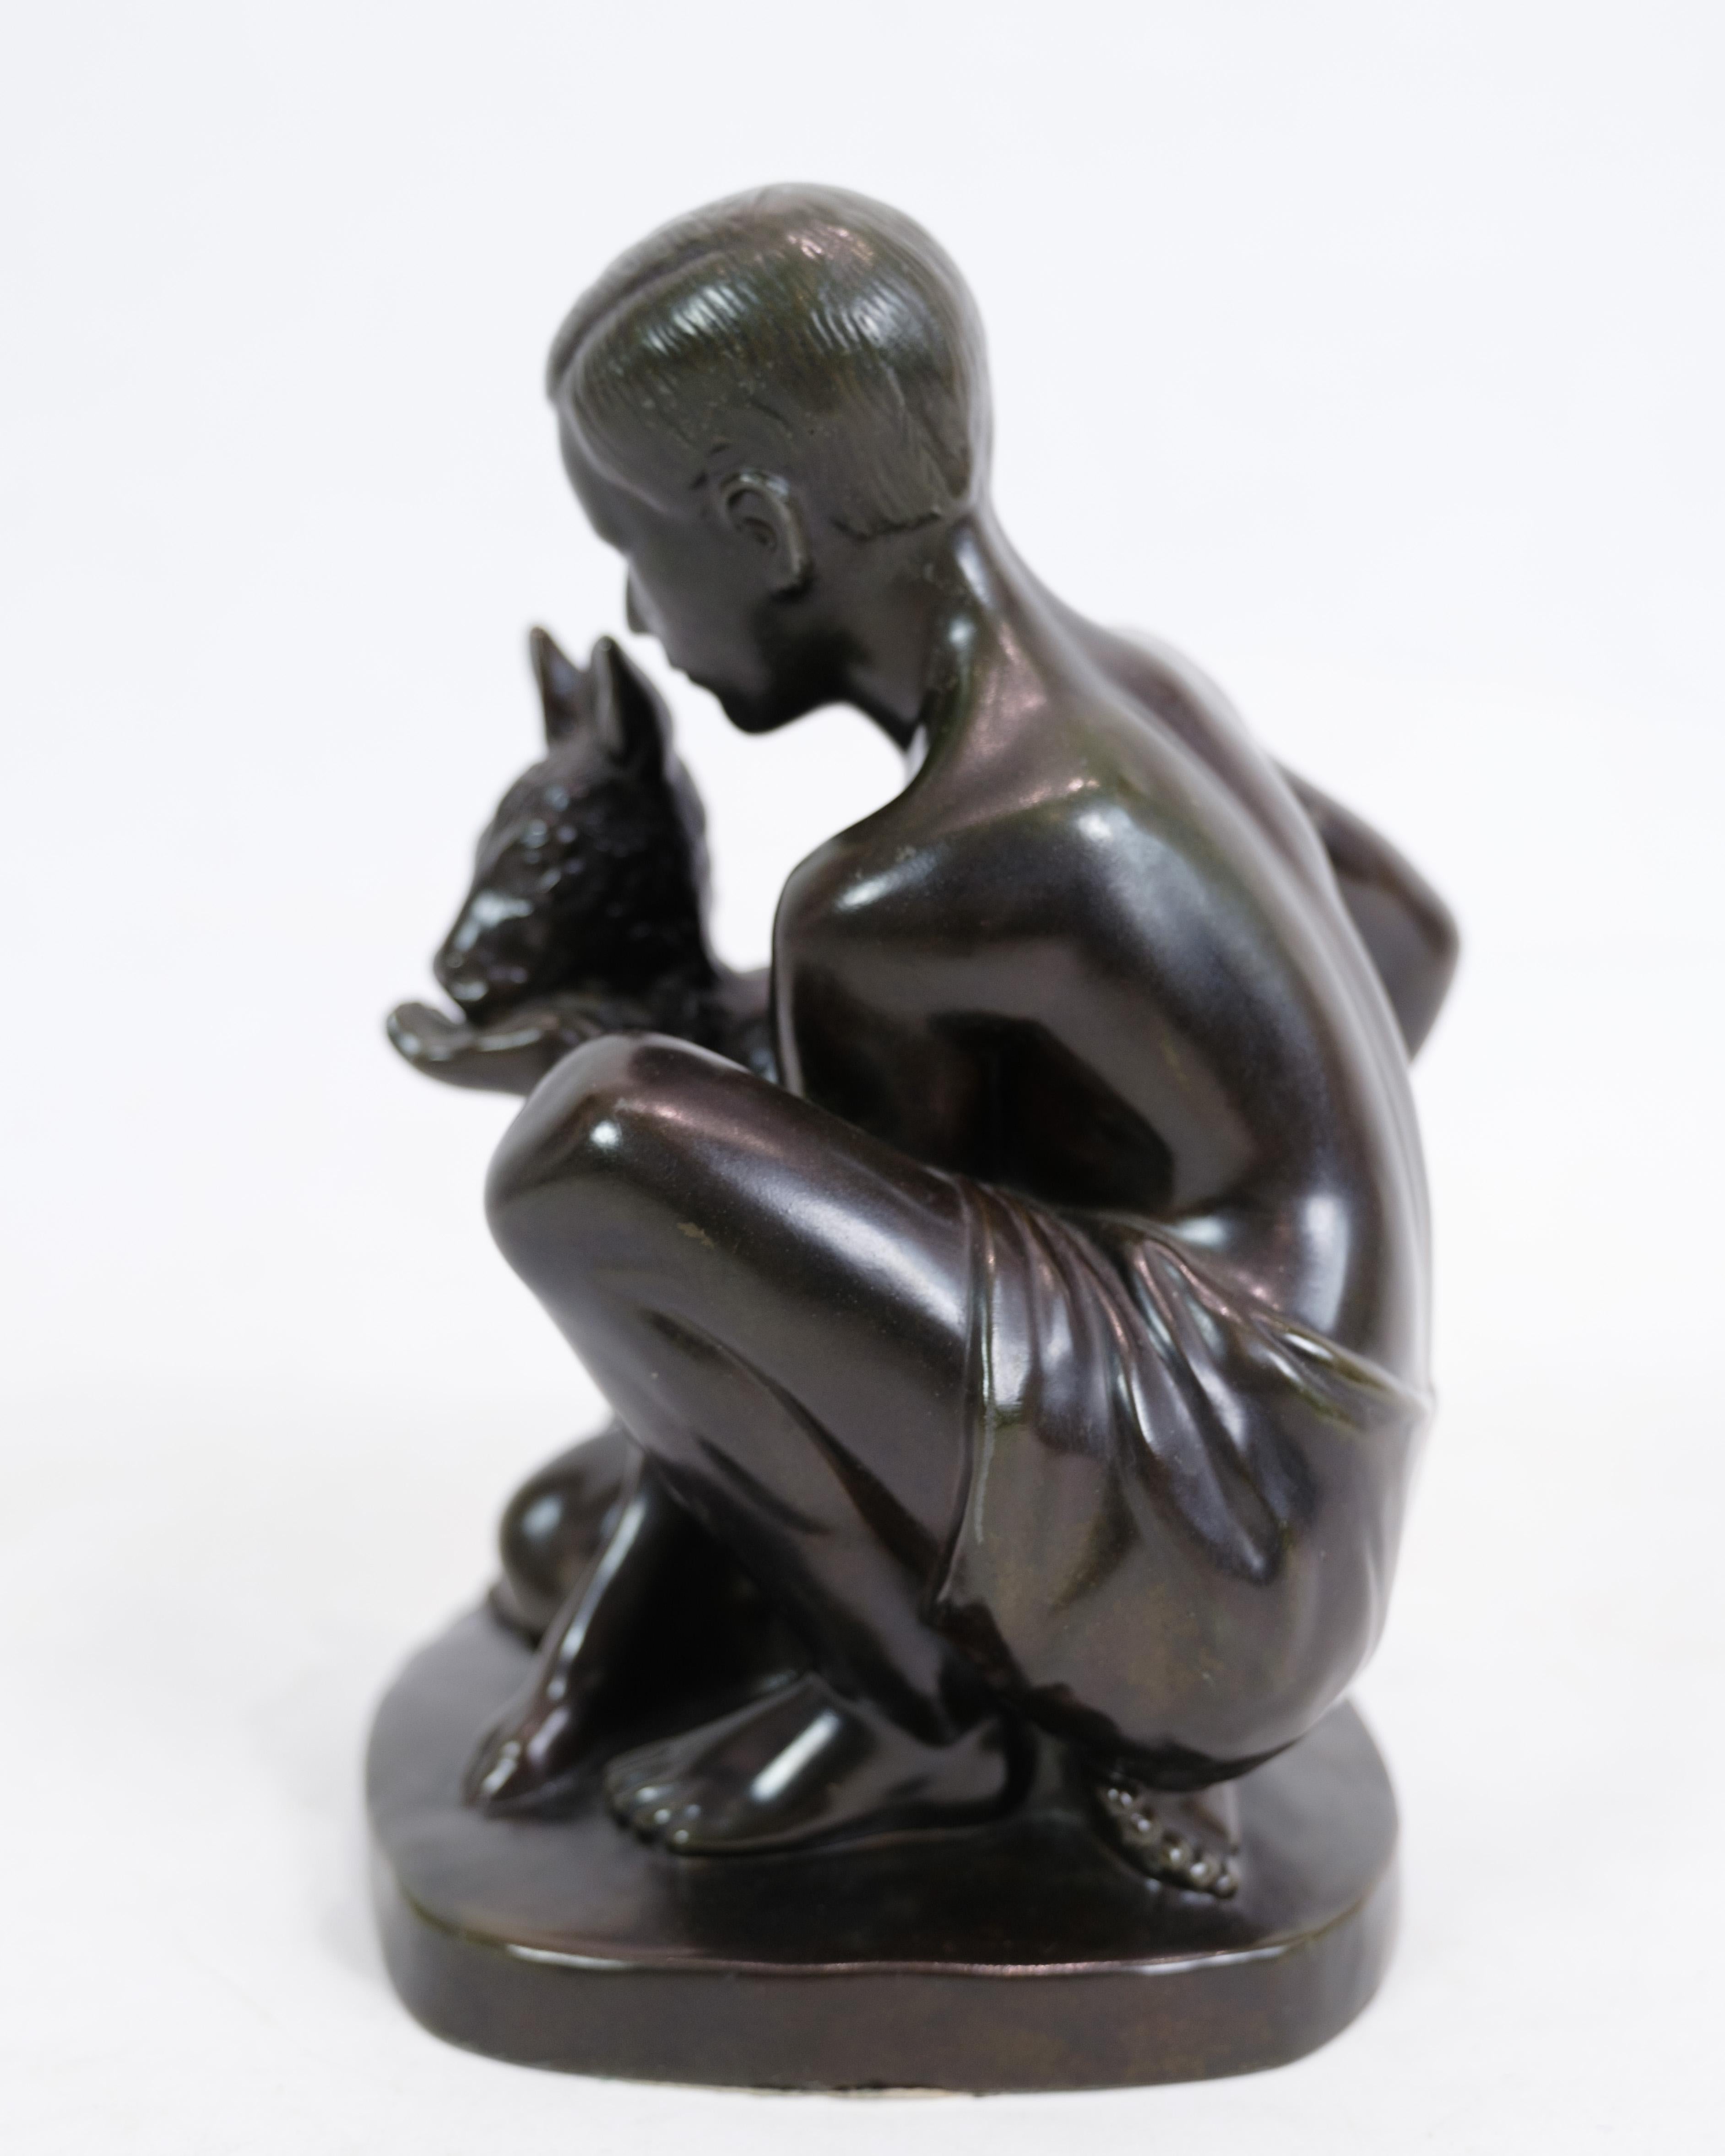 La figurine de Just Andersen représente une sculpture magnifiquement travaillée mettant en scène un garçon et un chevreuil. Il est identifié par le nom de modèle Just A D2318. Cette sculpture dégage une certaine simplicité tout en présentant une